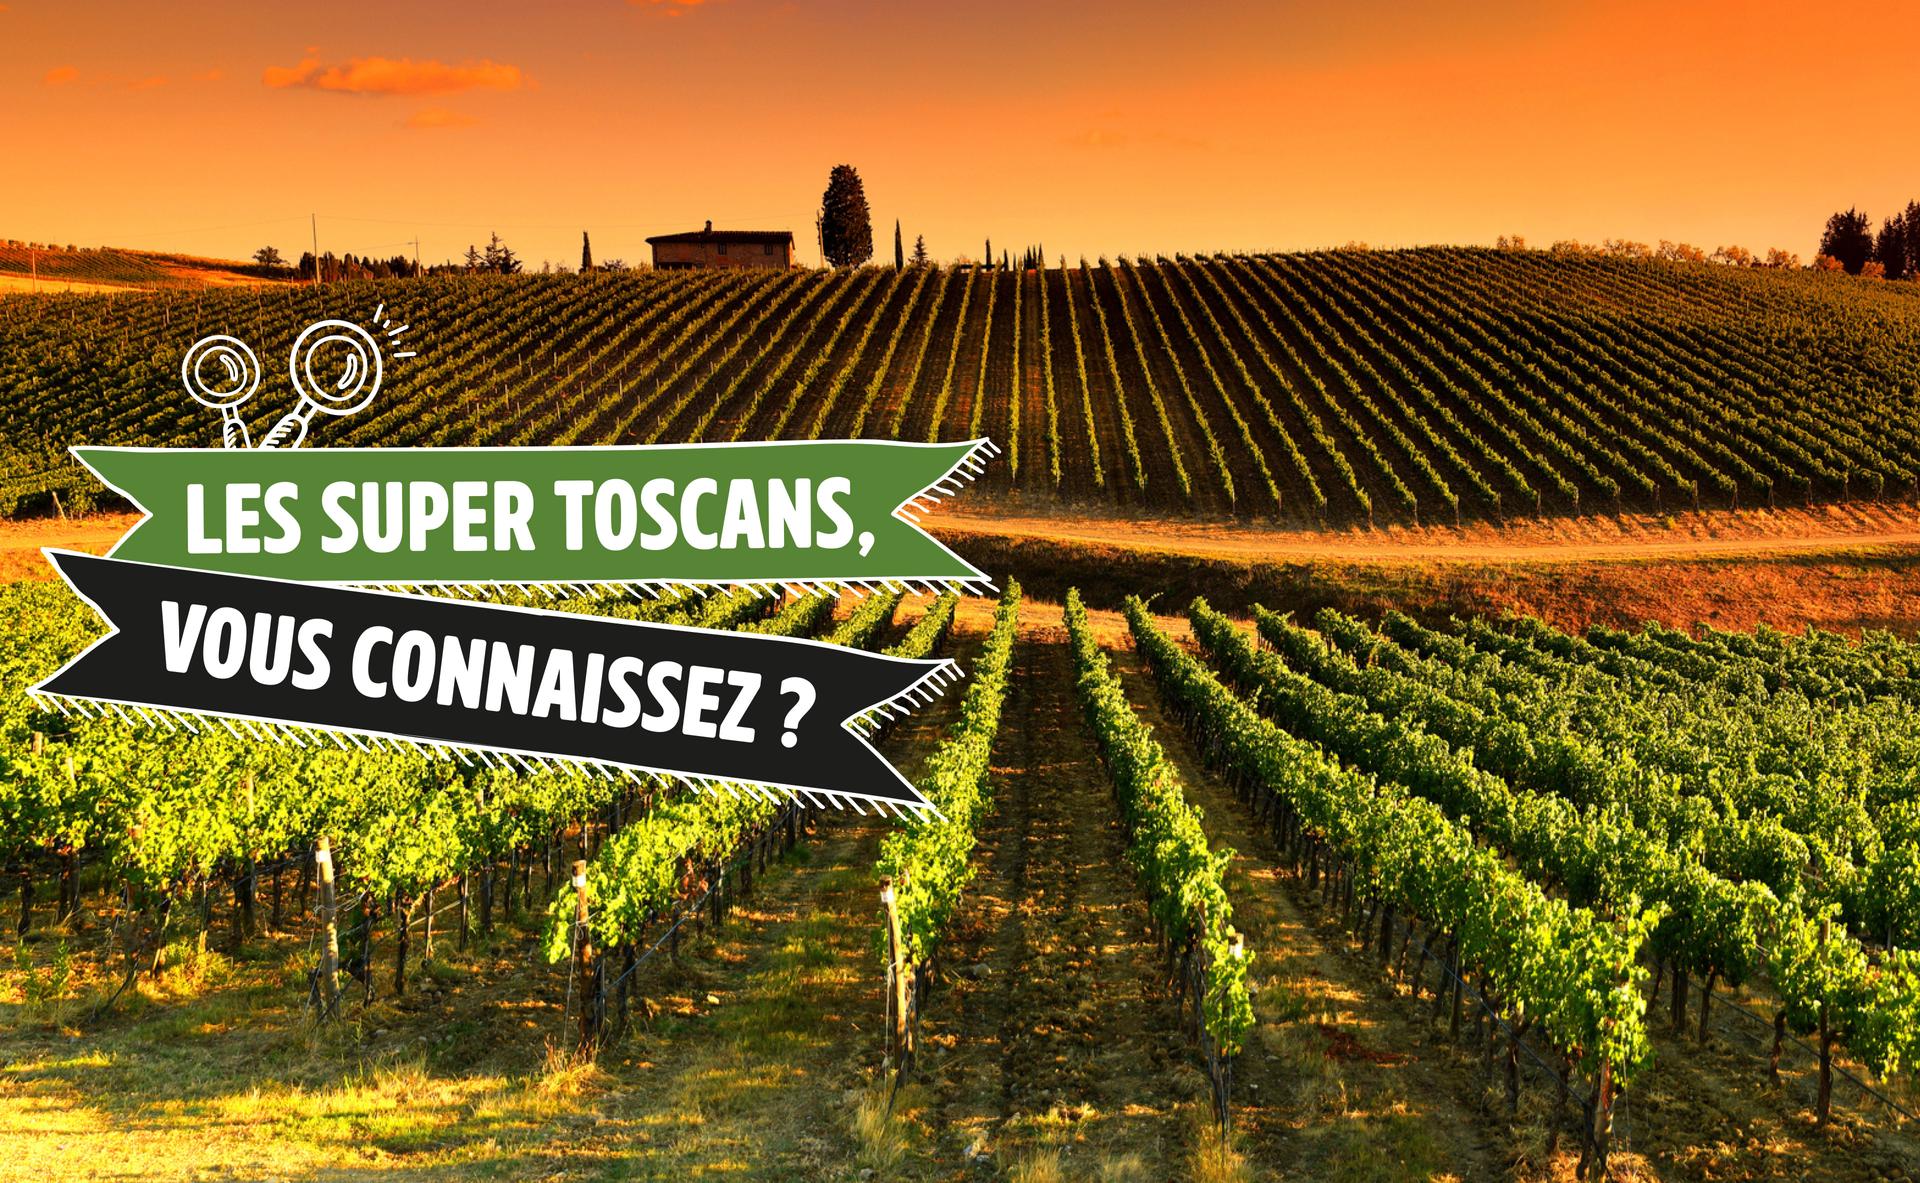 Les Super Toscans, vous connaissez ?